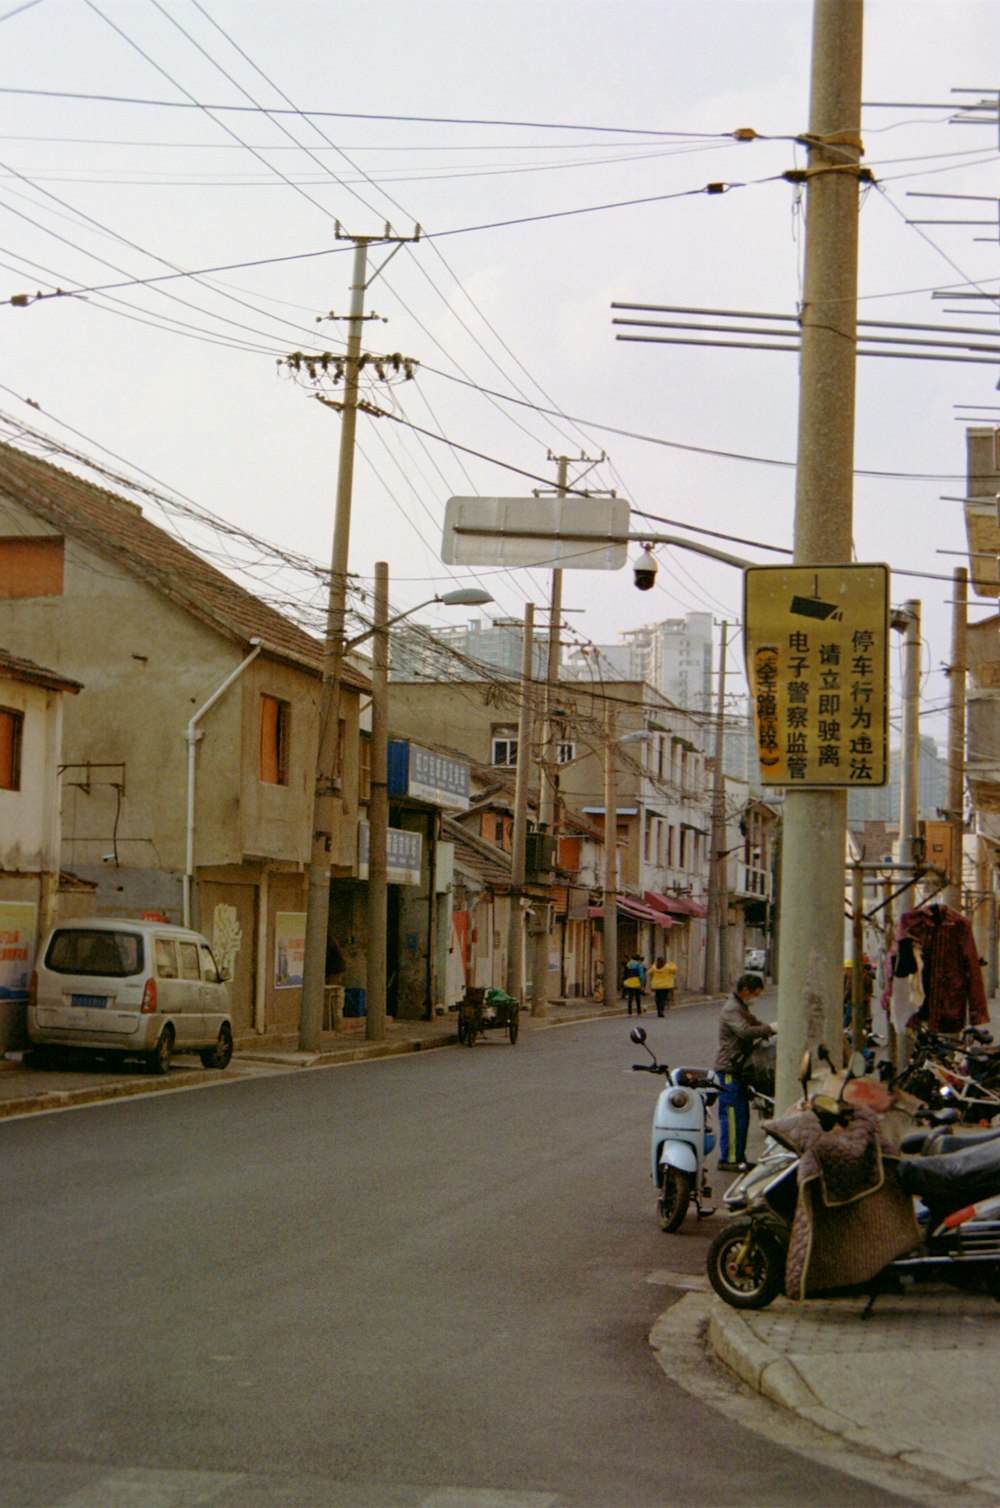 오토바이와 표지판이있는 거리